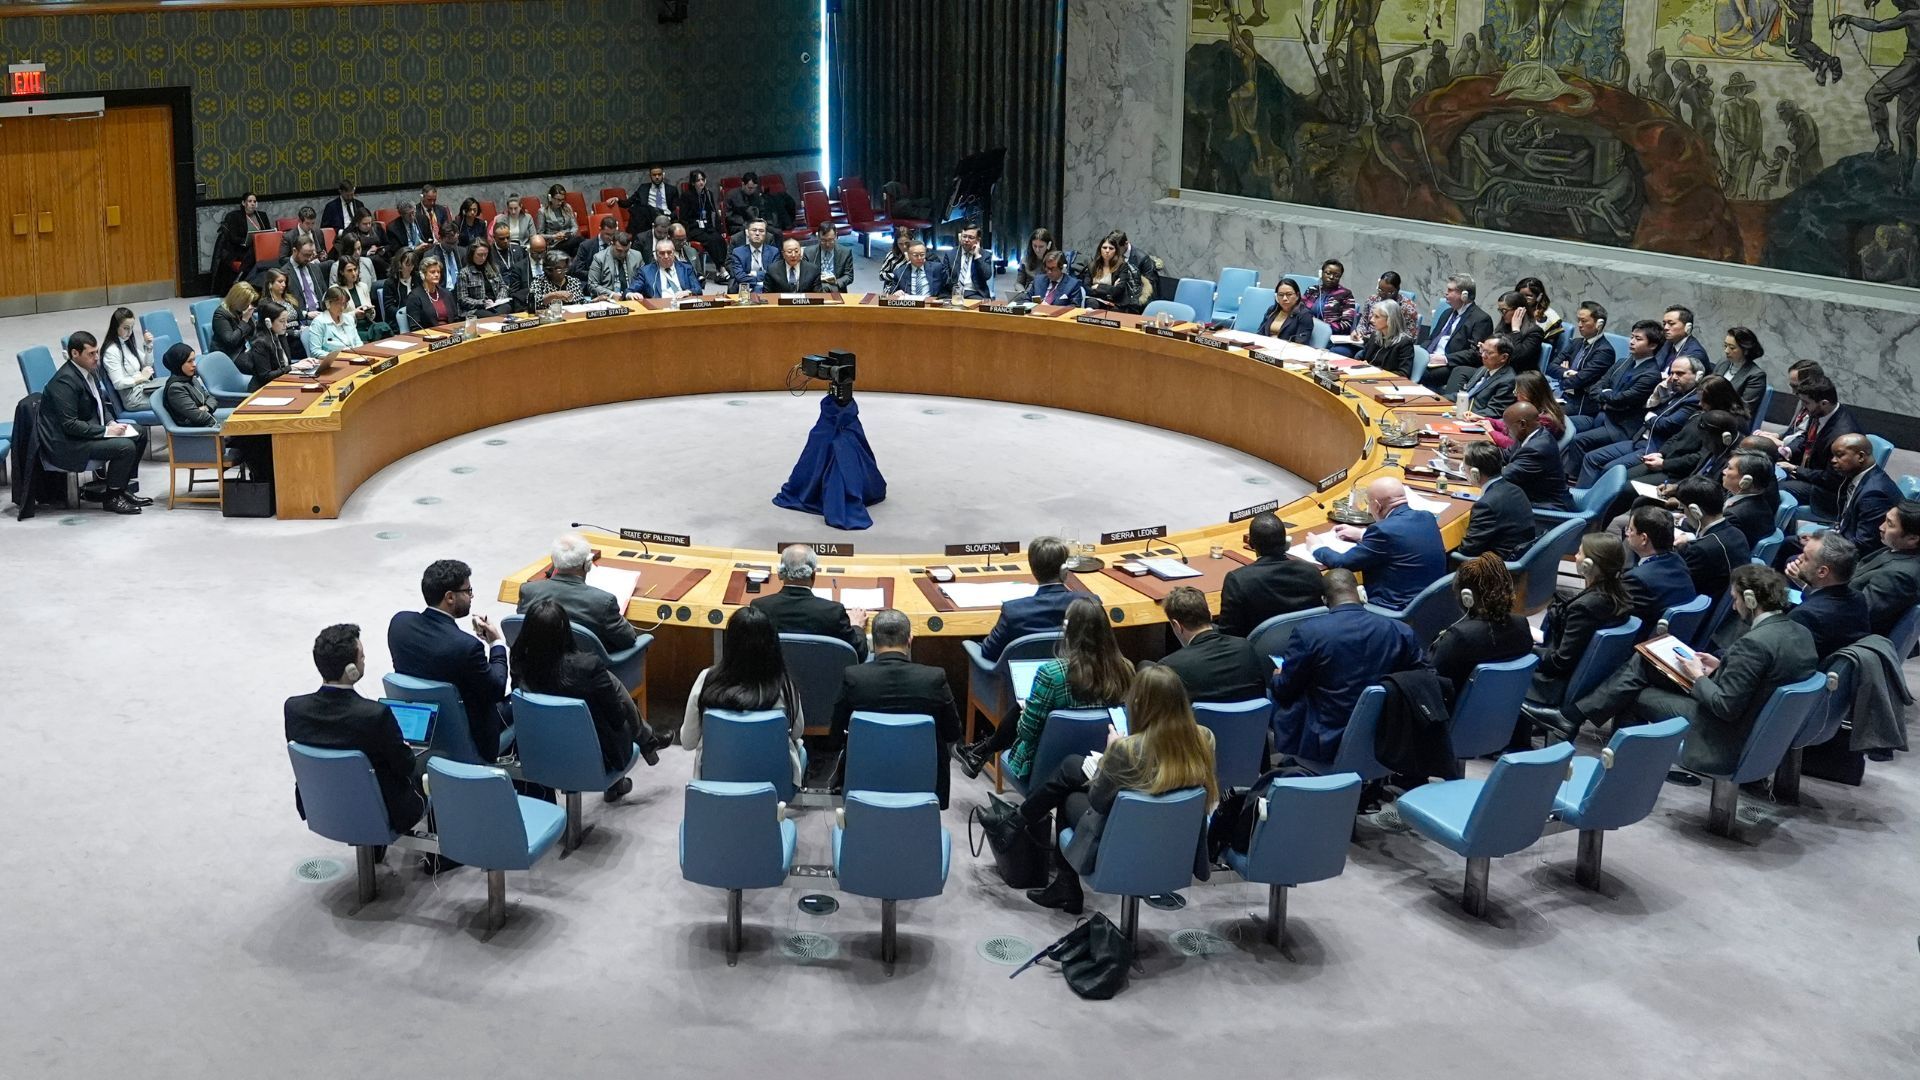 Dengan rekam jejaknya dalam memveto gencatan senjata di Gaza, Amerika Serikat mengumumkan resolusi baru PBB yang misterius  Berita perang Israel di Gaza